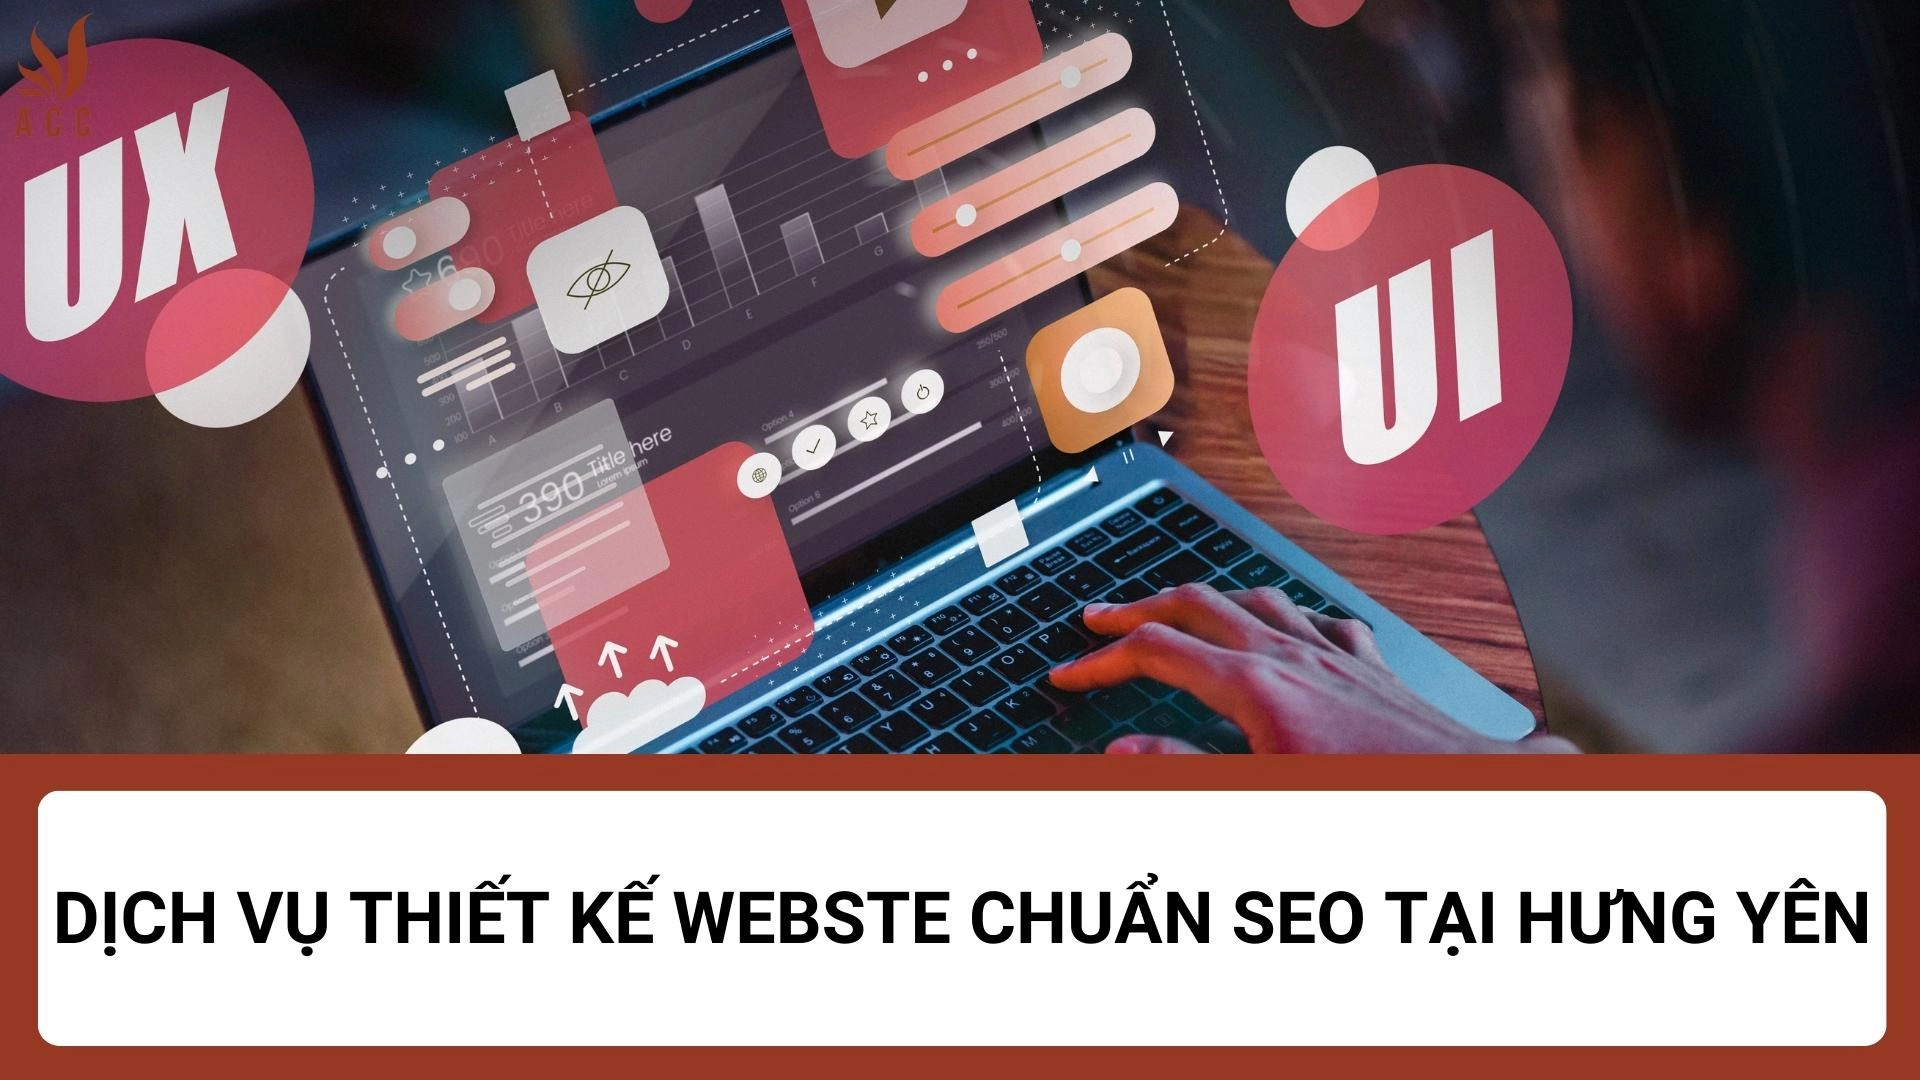 Chuyên Thiết Kế Web tại Hưng Yên Uy Tín - Chuẩn SEO